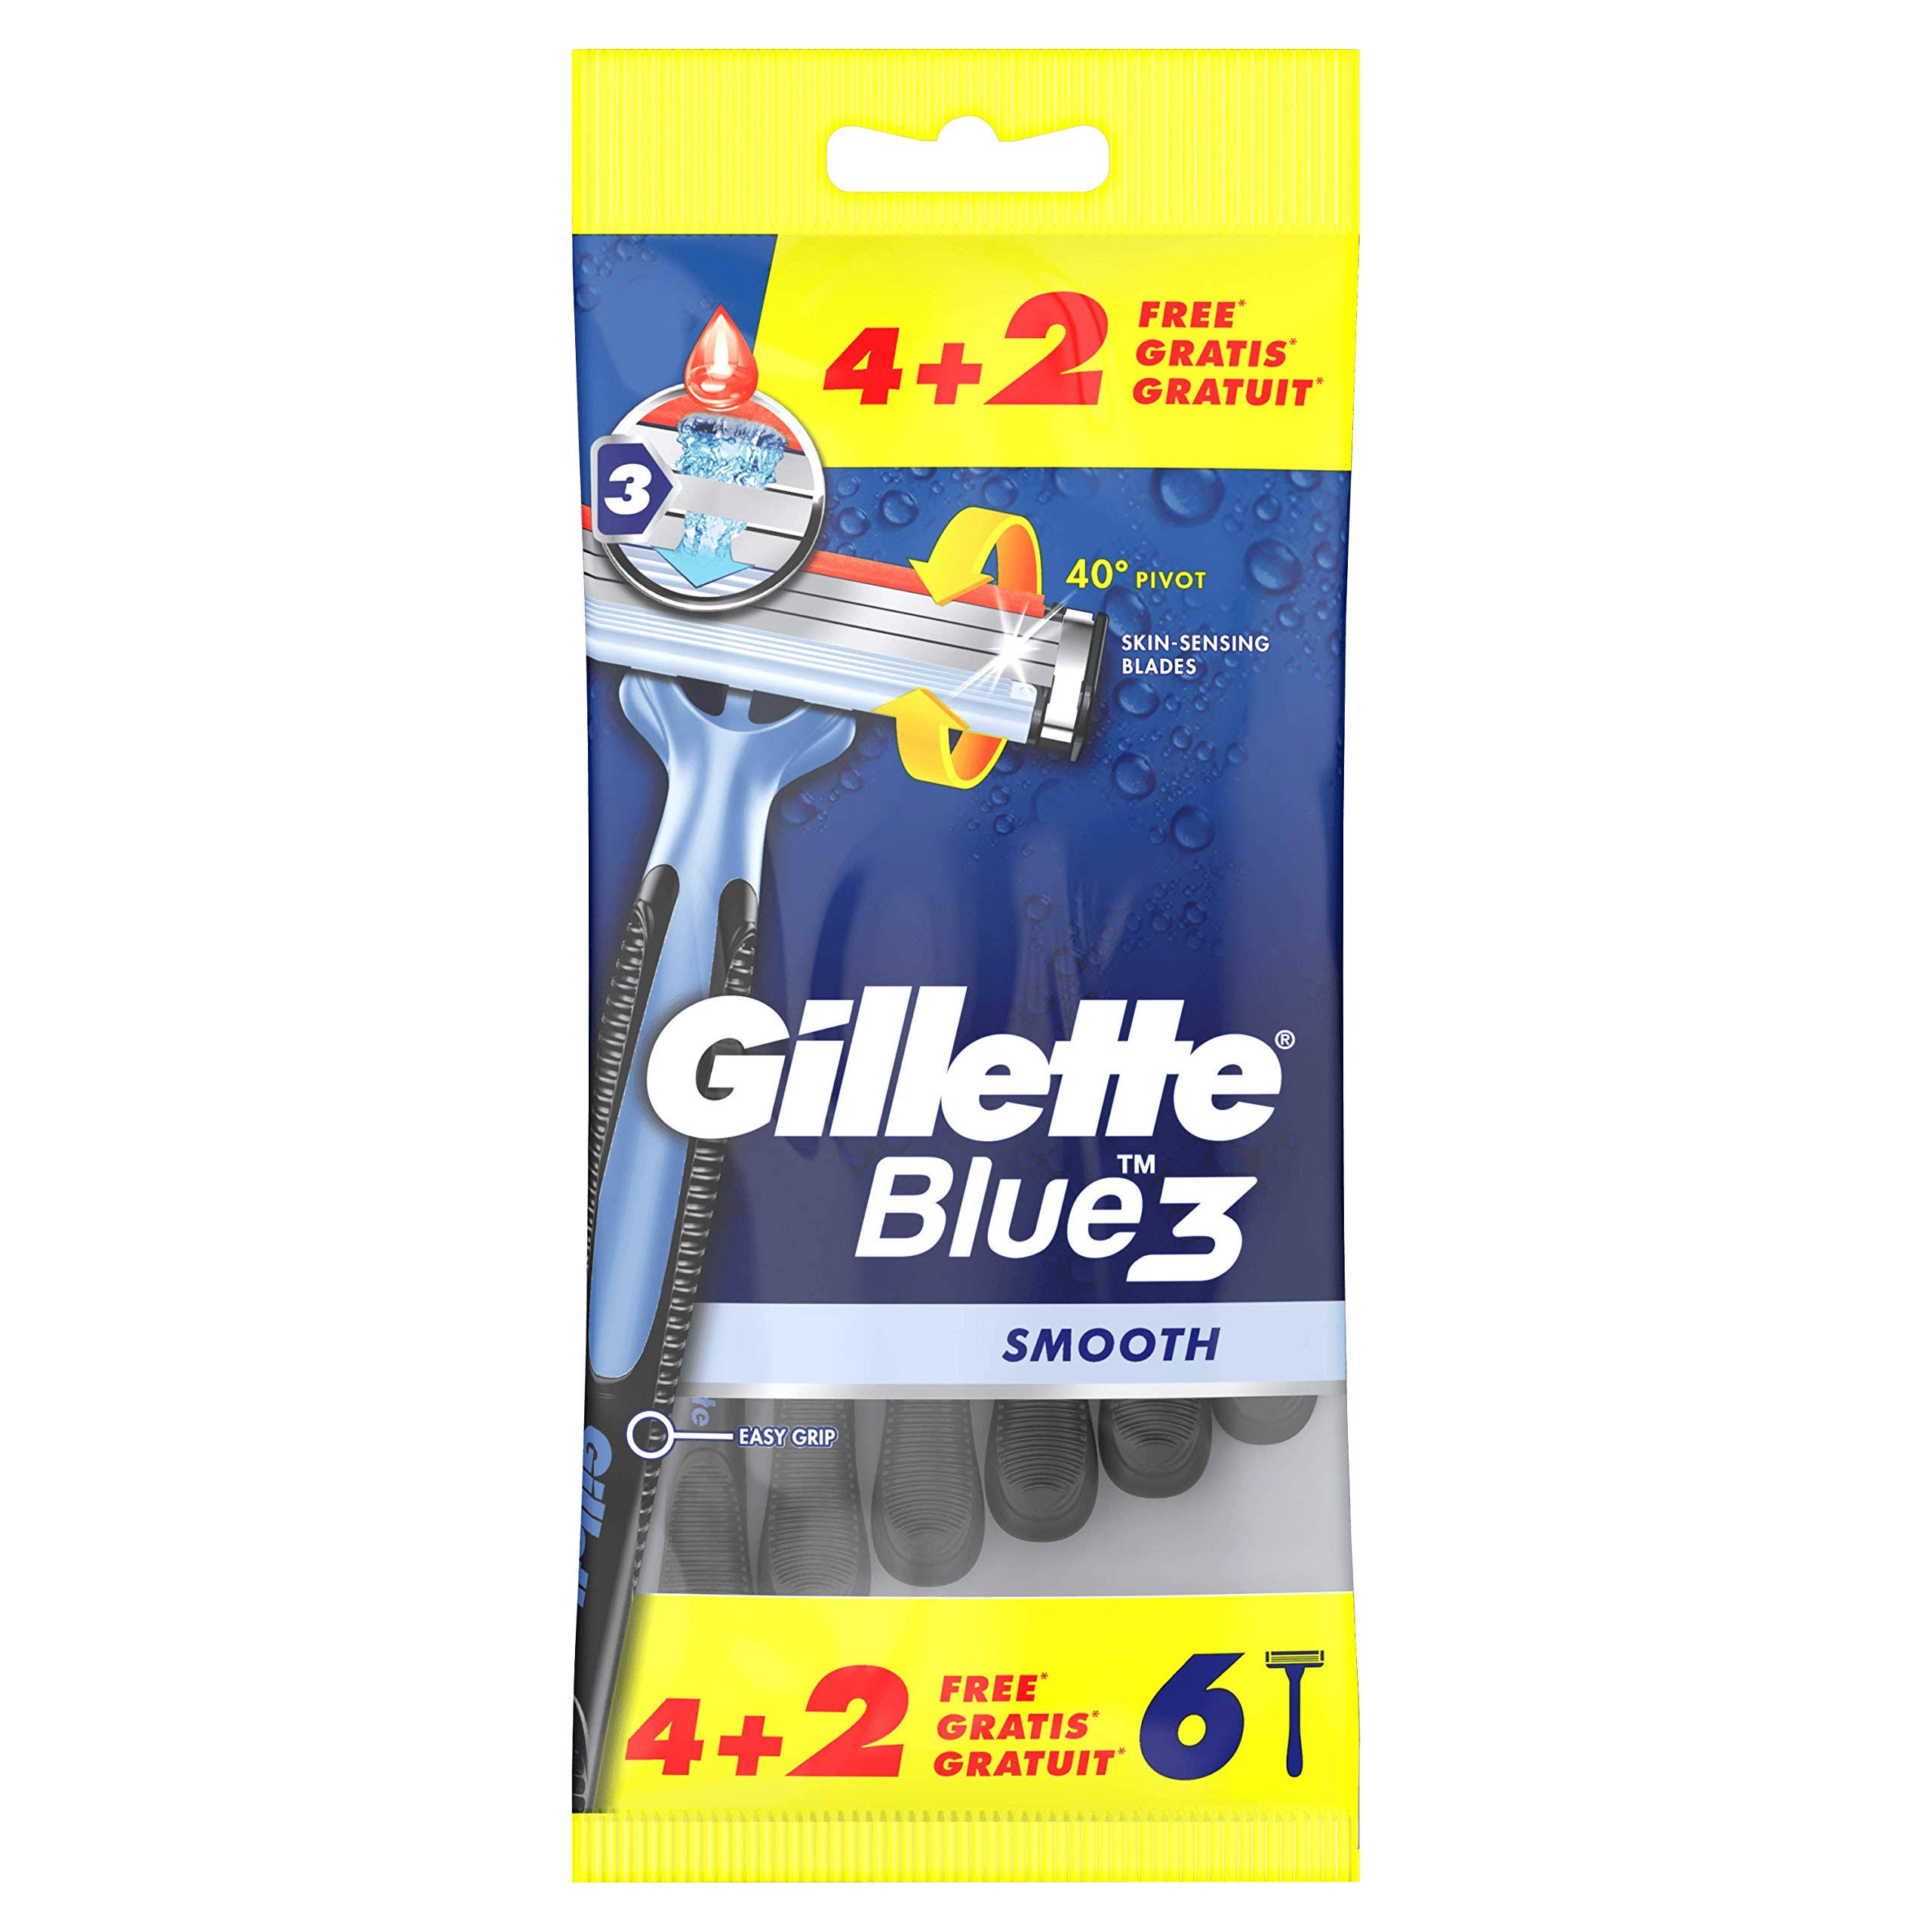 Gillette Blue 3 – 6 Pack